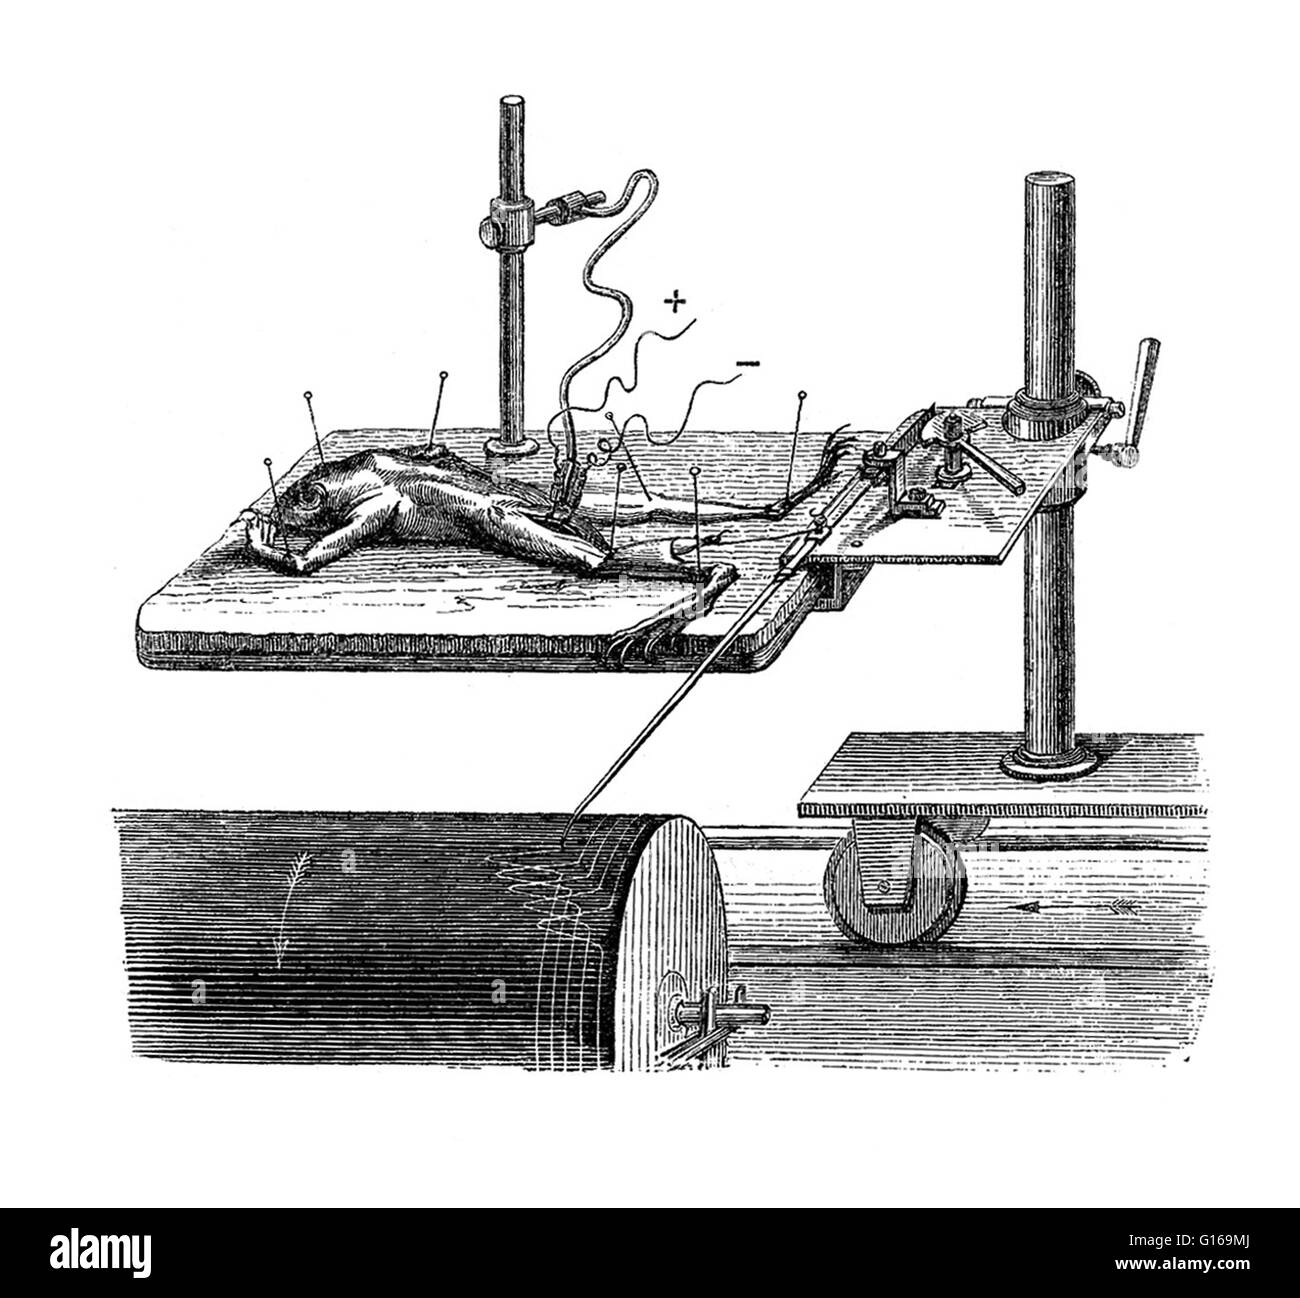 Die tierischen Maschine, Mareys Myograph, 1873. Am besten bekannt für seine wesentliche Beteiligung an der Entwicklung der Chronofotografie, französischer Wissenschaftler Étienne Jules-Marey ist auch gutgeschrieben für Hermann von Helmholtz Myograph zu perfektionieren. Ein Myograph ist ein Gerät zur Aufzeichnung der Kraft durch einen Auftraggeber Muskel erzeugt. Mareys Beschreibung der Abbildung entnommen aus der englischen Ausgabe seines Buches, The Animal Machine, terrestrisch und Fortbewegung durch die Luft, "der Frosch ist vertreten im Experiment, mit Hilfe von Stiften, auf ein Stück Kork fixiert. Das Gehirn und das Rückenmark sind bereits zerstört worden Stockfoto